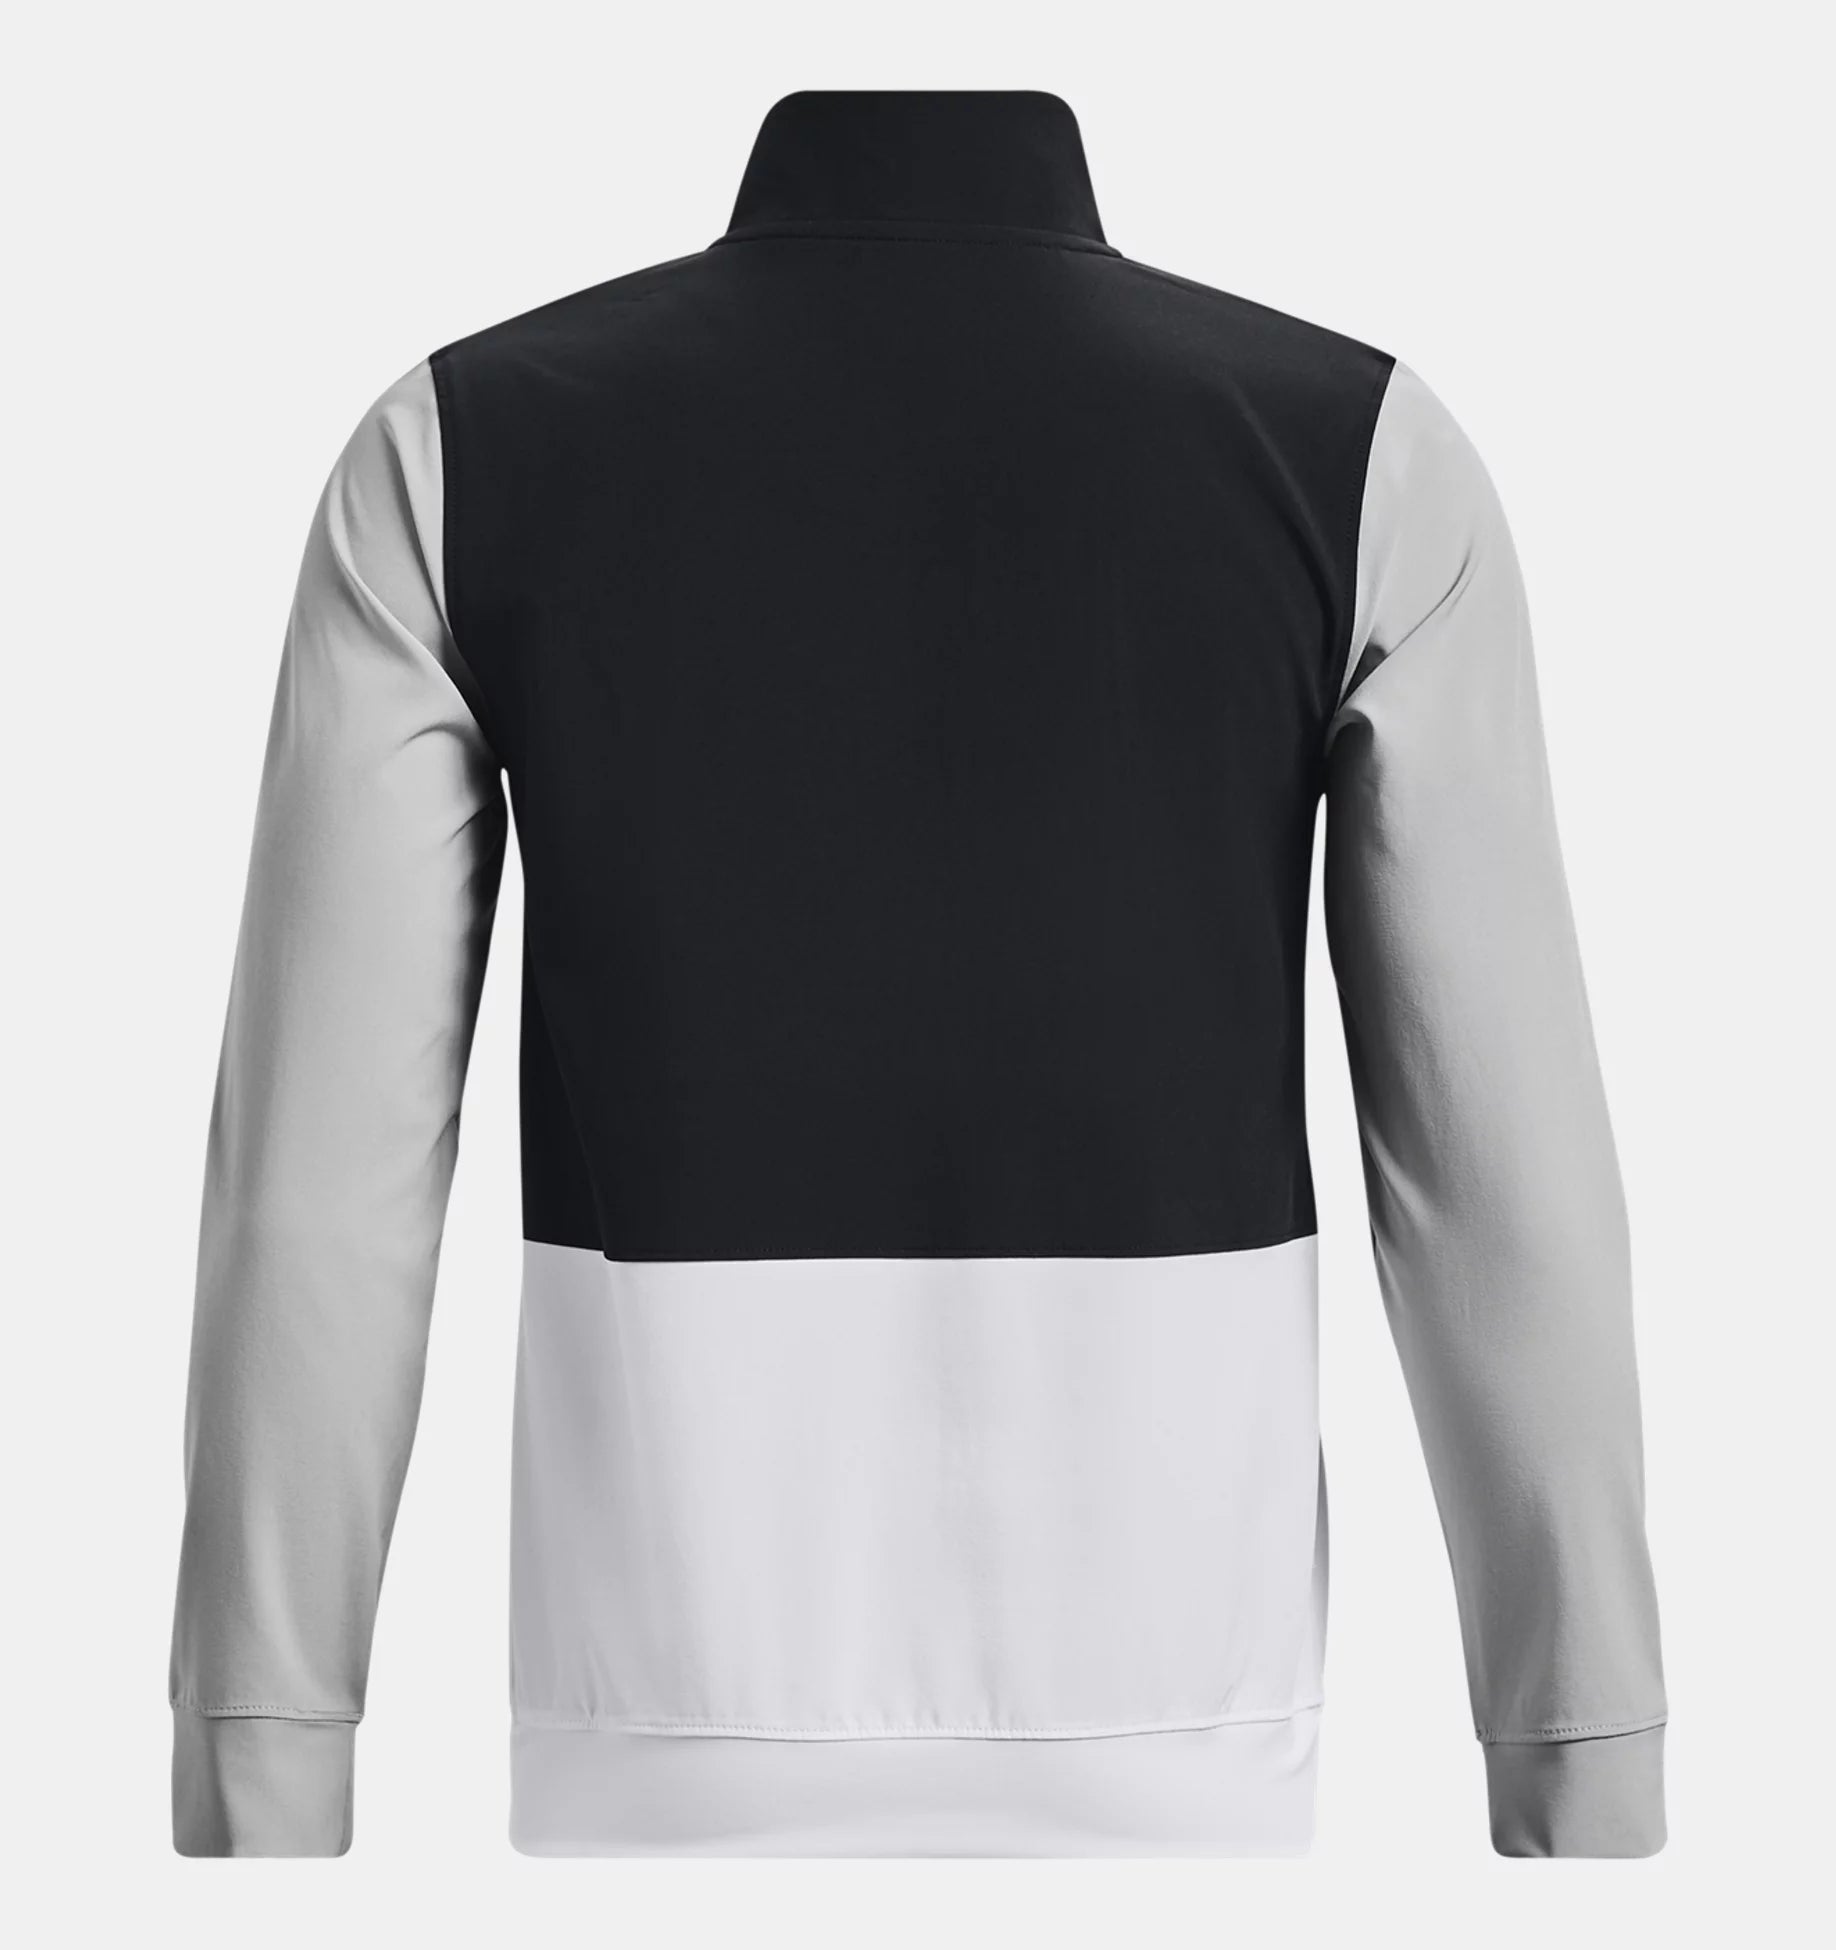 Sweatshirt Under Armour UA Woven Junior - Schwarz/Grau/Weiß